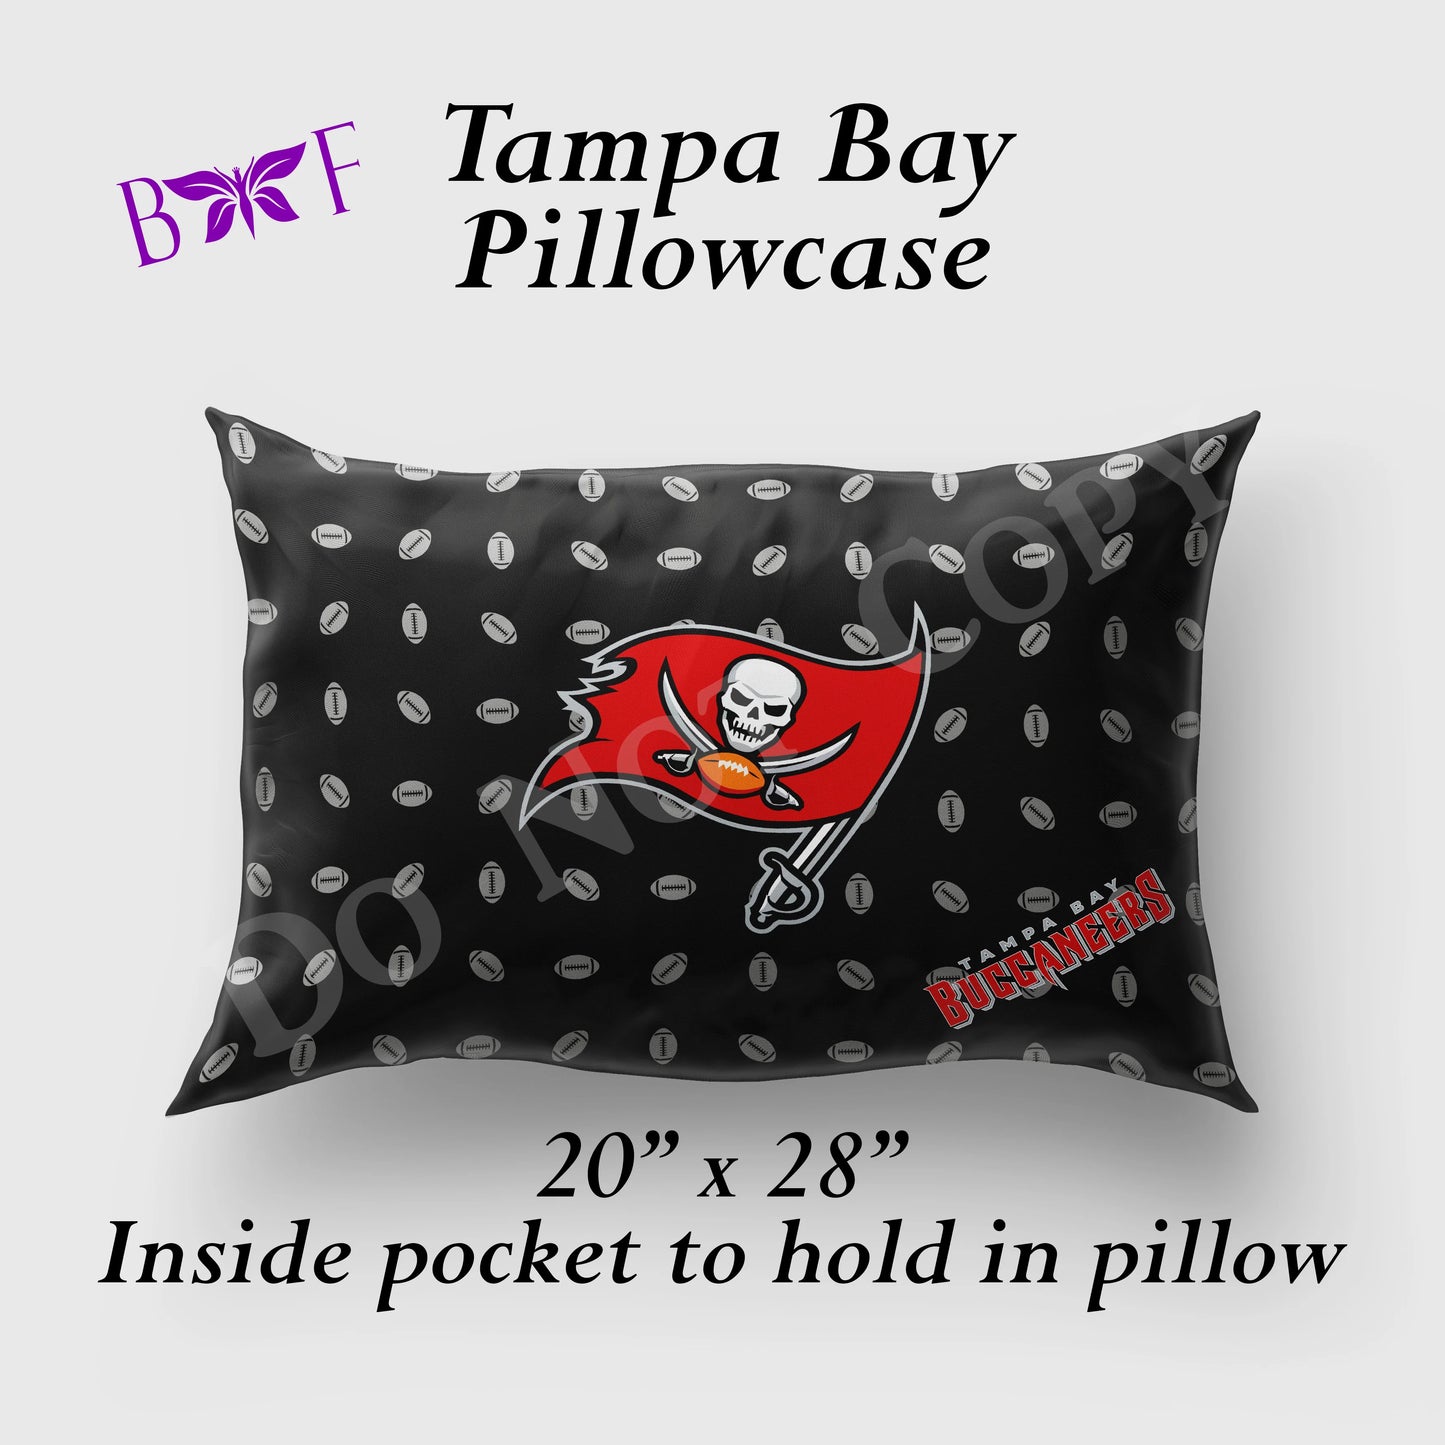 Tampa Bay Pillowcase preorder #1018